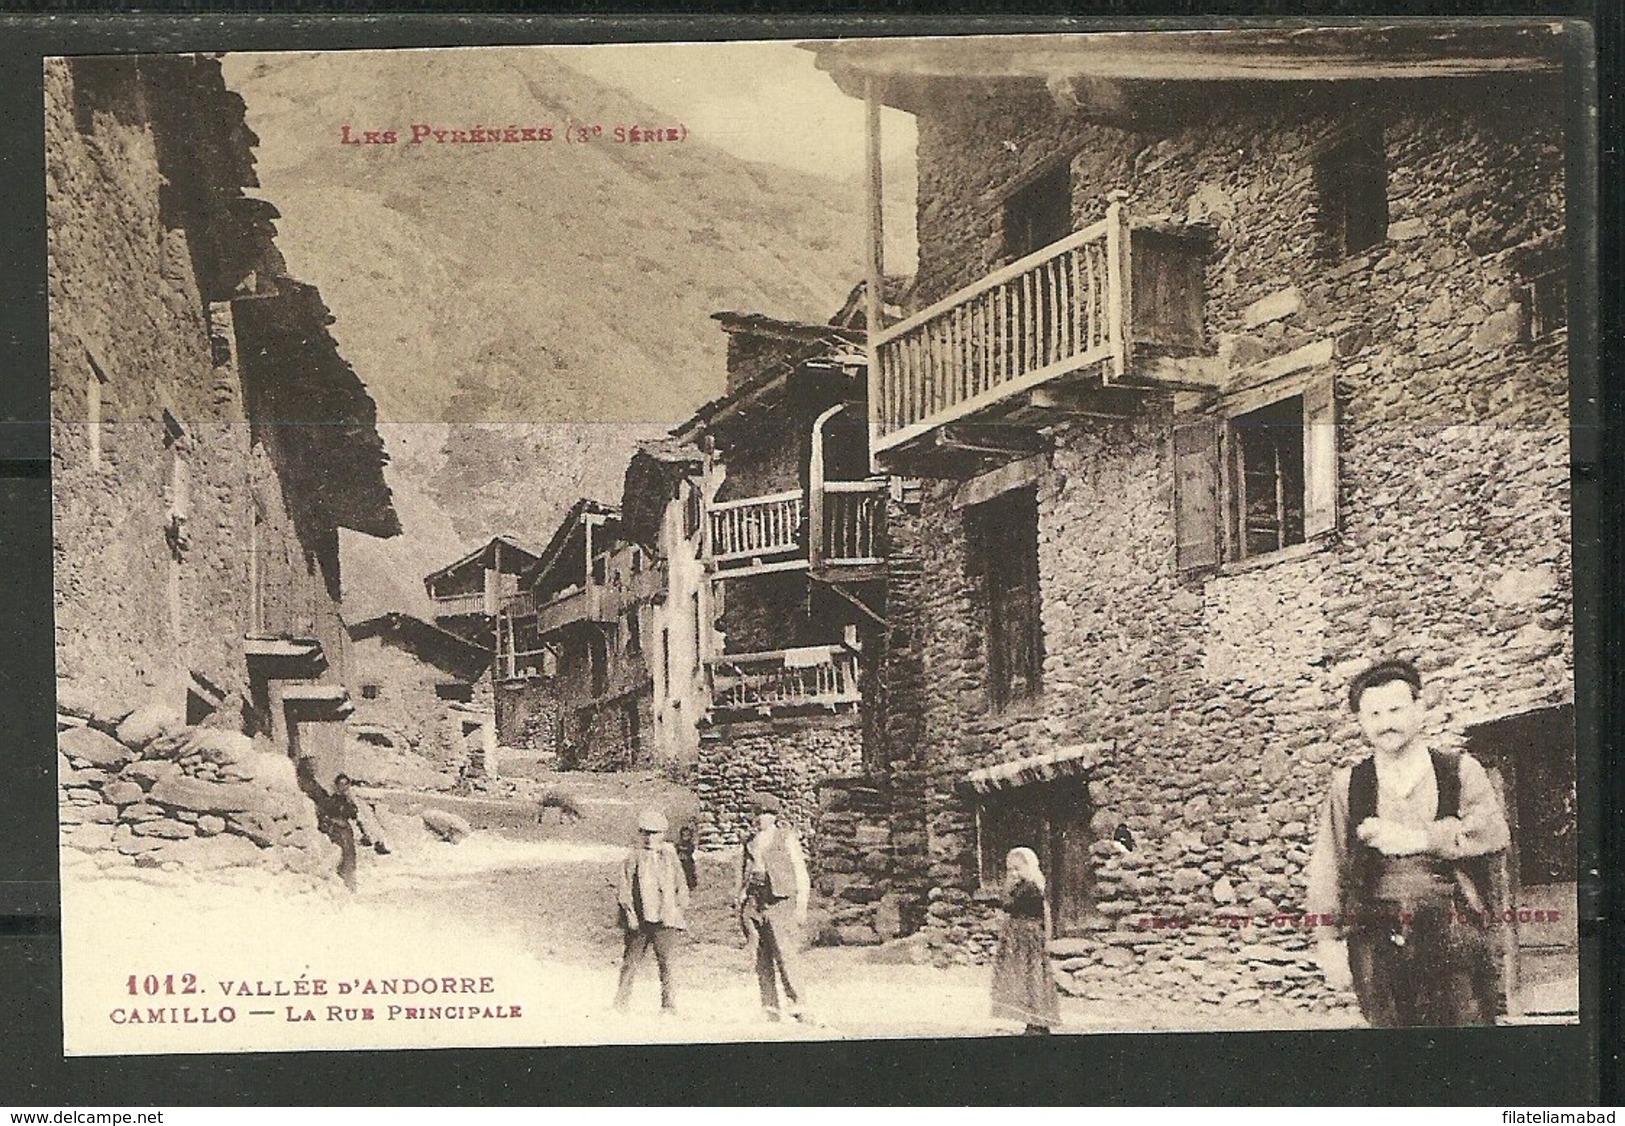 ANDORRA- 1O12.- VALLÉE D'ANDORRE  LES PYRÉNÉEE((I.8))) - Andorra